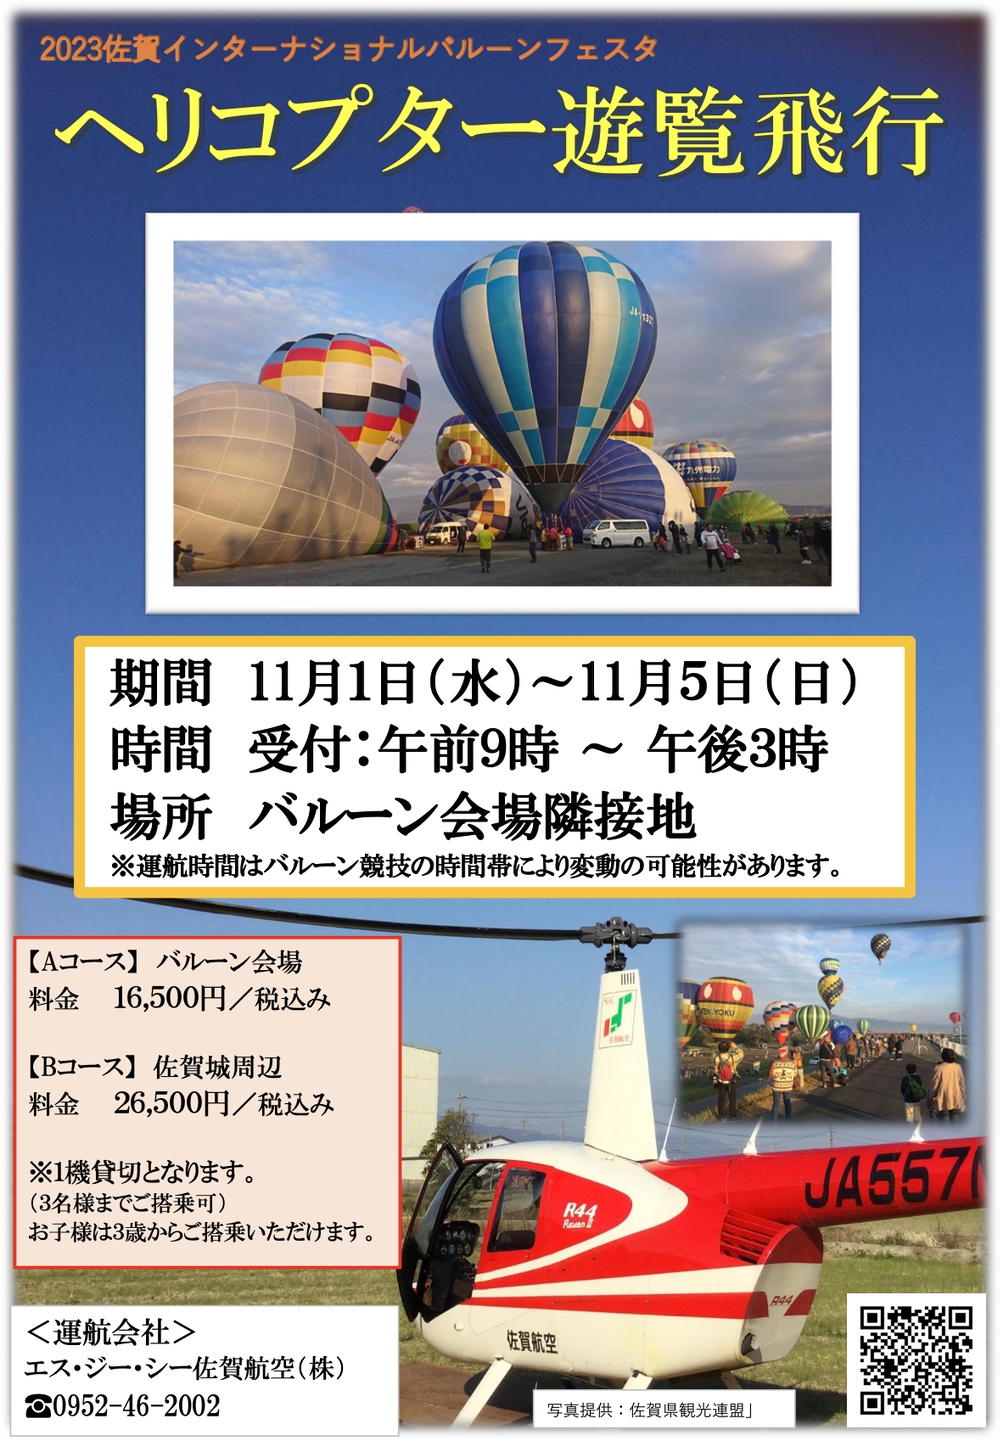 2023佐賀インターナショナルバルーンフェスタ ヘリコプター遊覧飛行